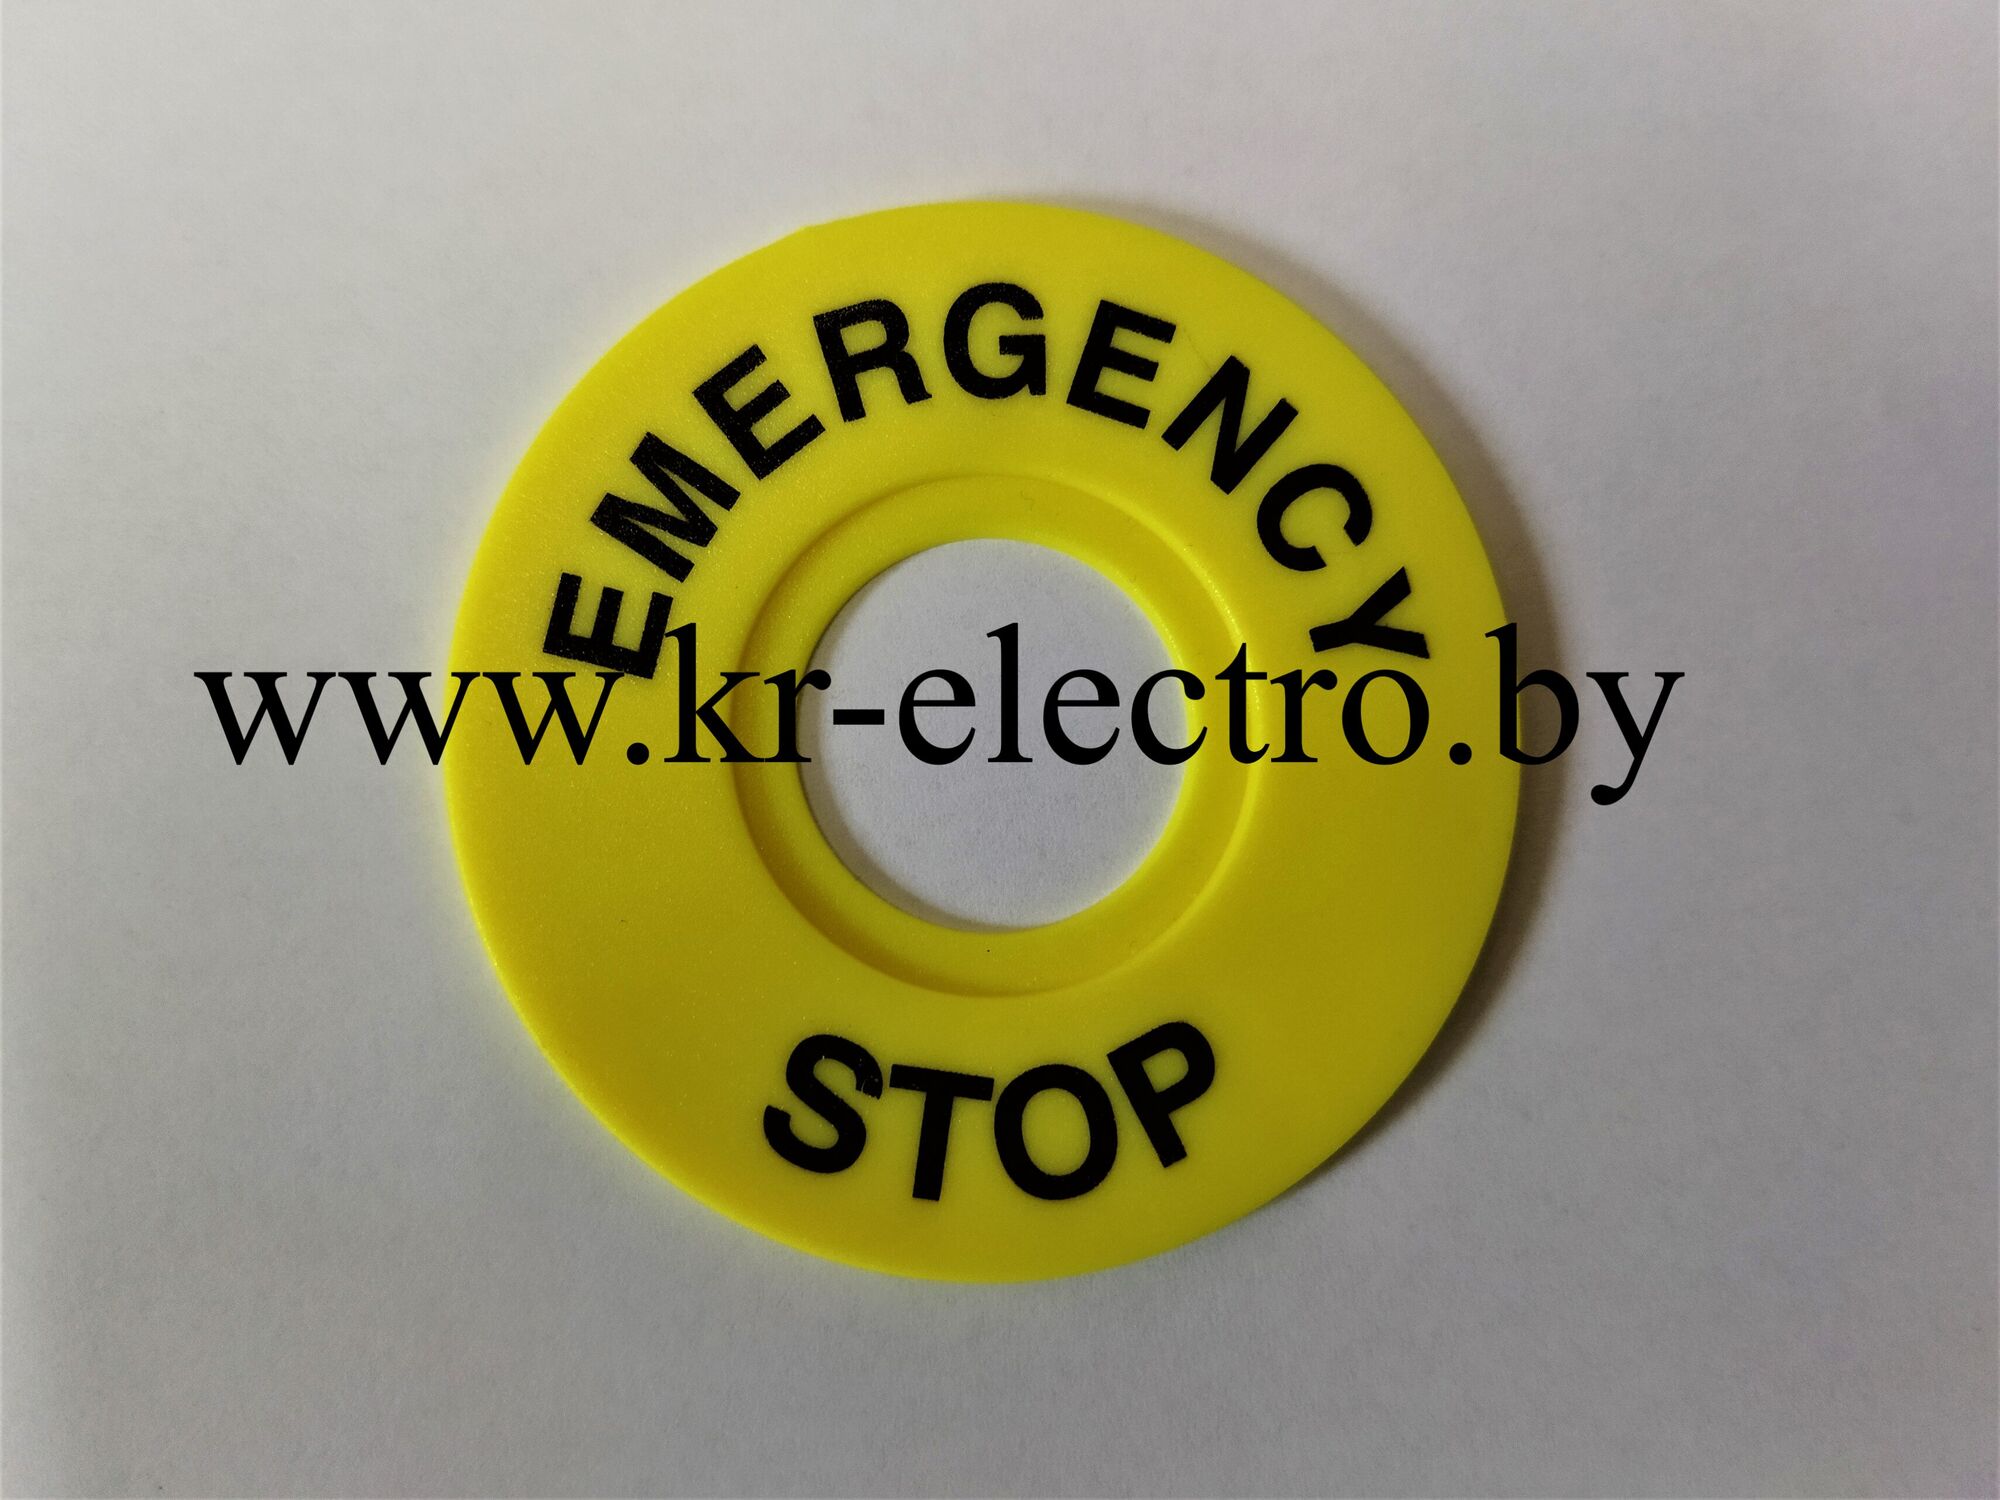 Пластиковая бирка желтого цвета ф посадочный = 22 мм , предназначена для маркировки и установки на посты.